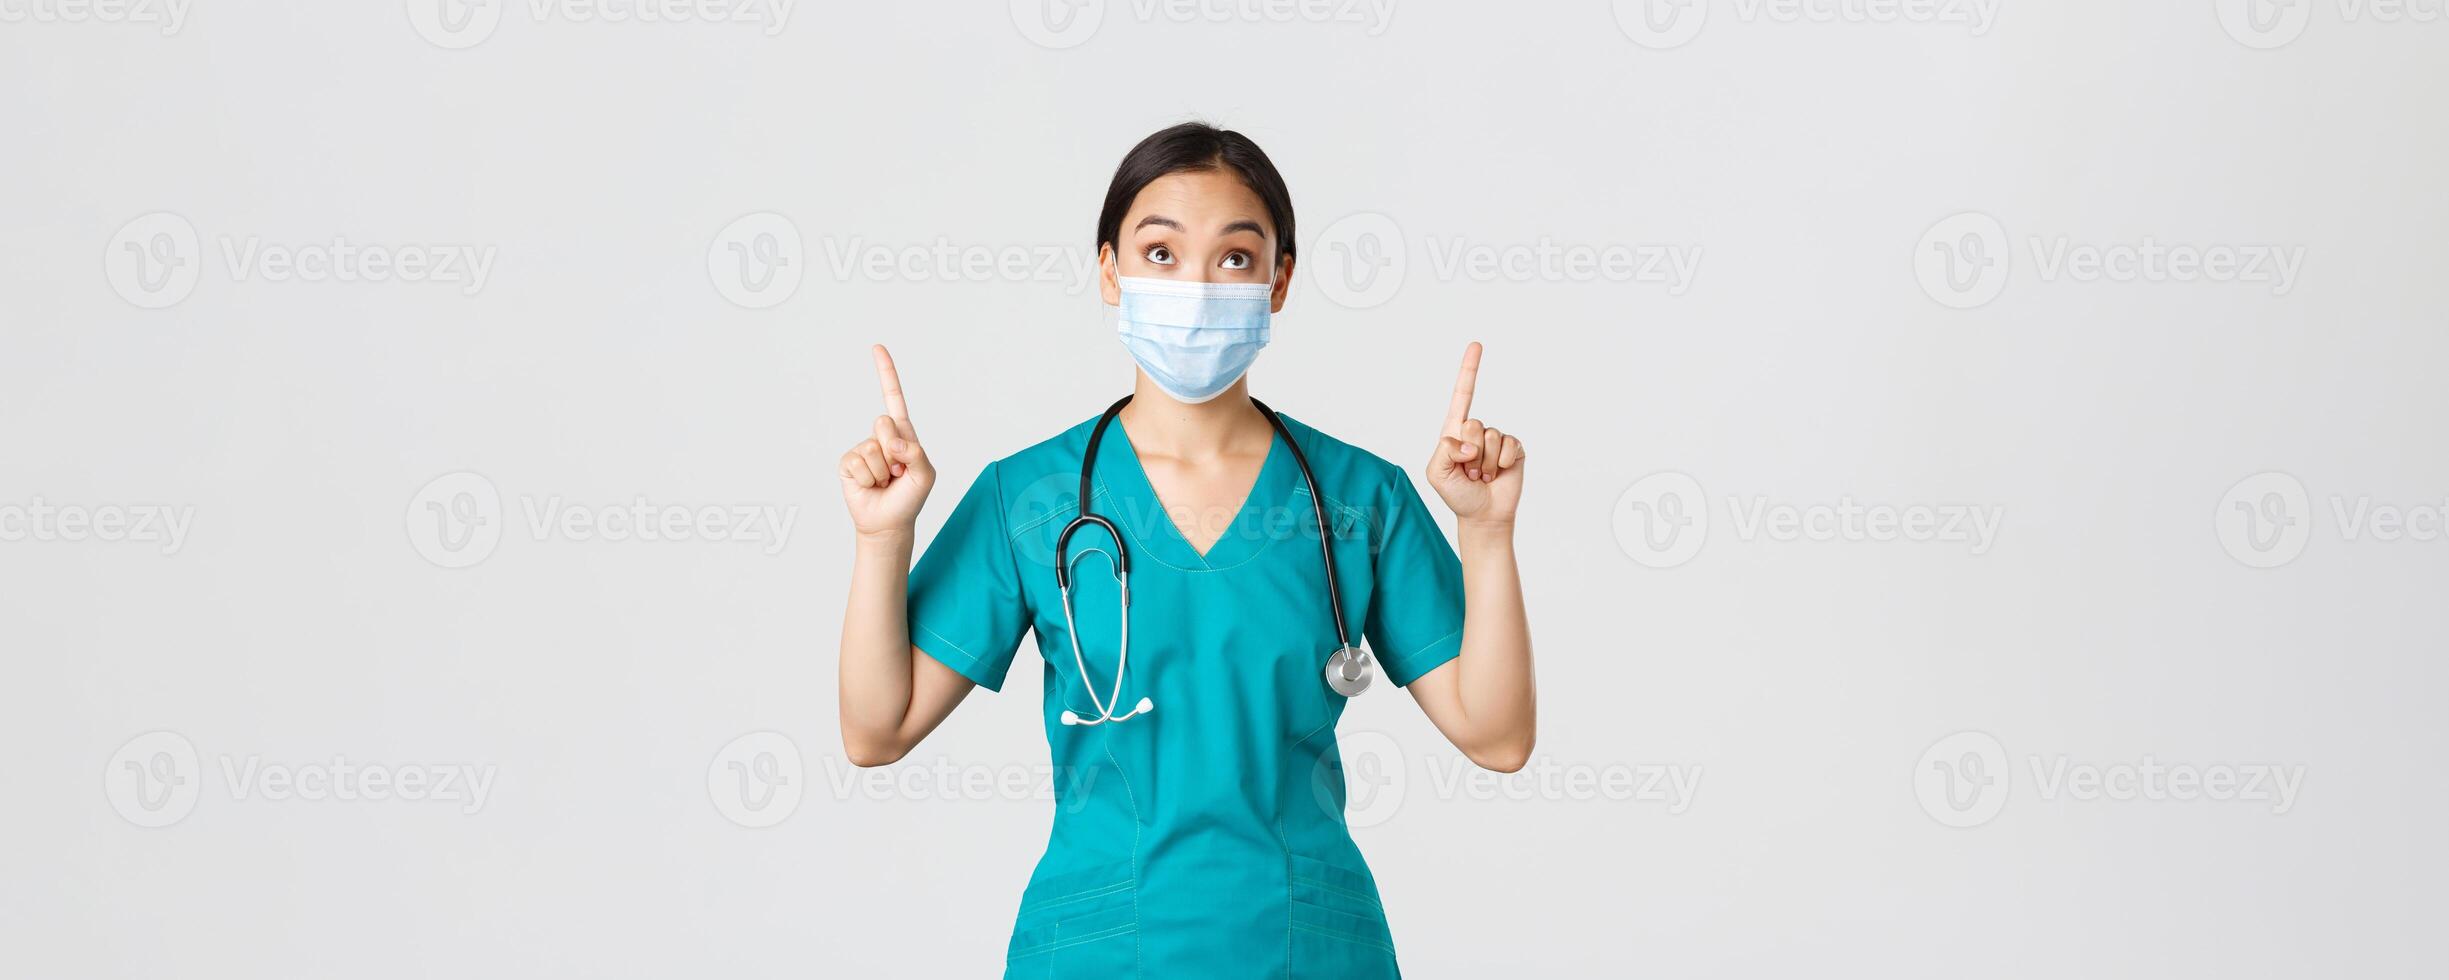 COVID-19, Coronavirus Krankheit, Gesundheitswesen Arbeitskräfte Konzept. fasziniert und aufgeregt asiatisch Frau Arzt, Krankenschwester im medizinisch Maske und Handschuhe, suchen und zeigen Finger hoch, Weiß Hintergrund foto